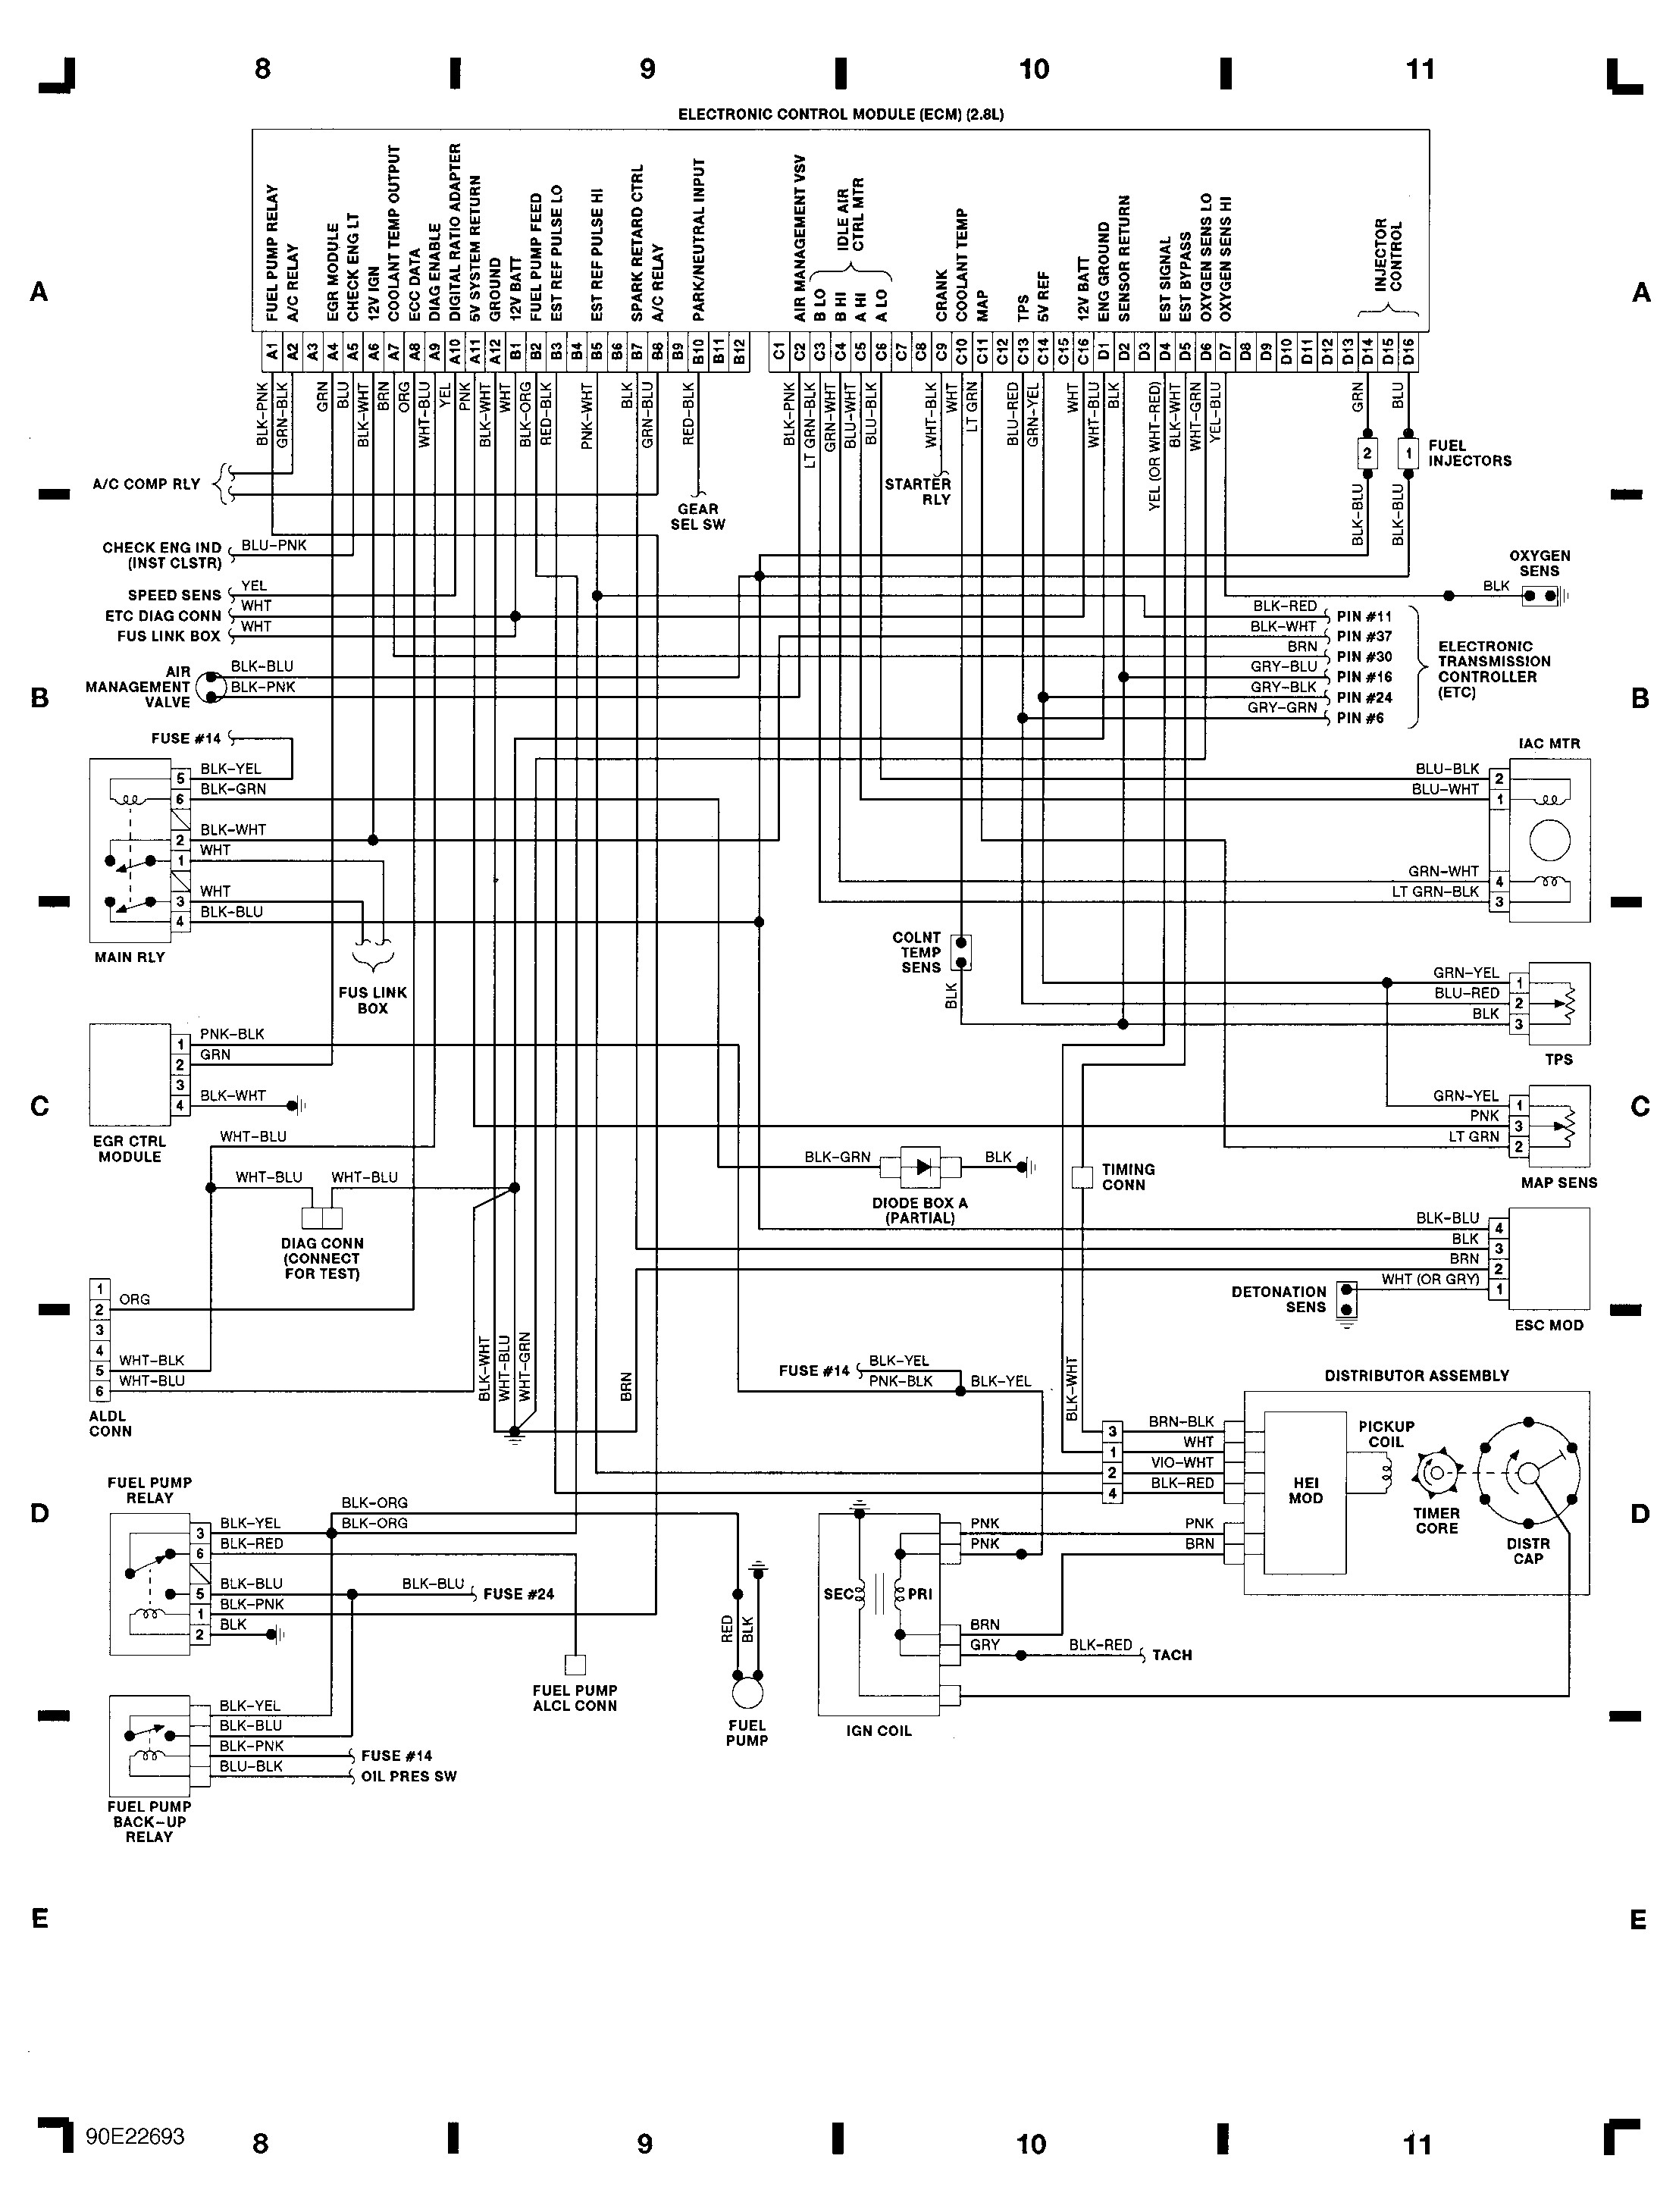 91 Ford Explorer Wiring Diagram from detoxicrecenze.com